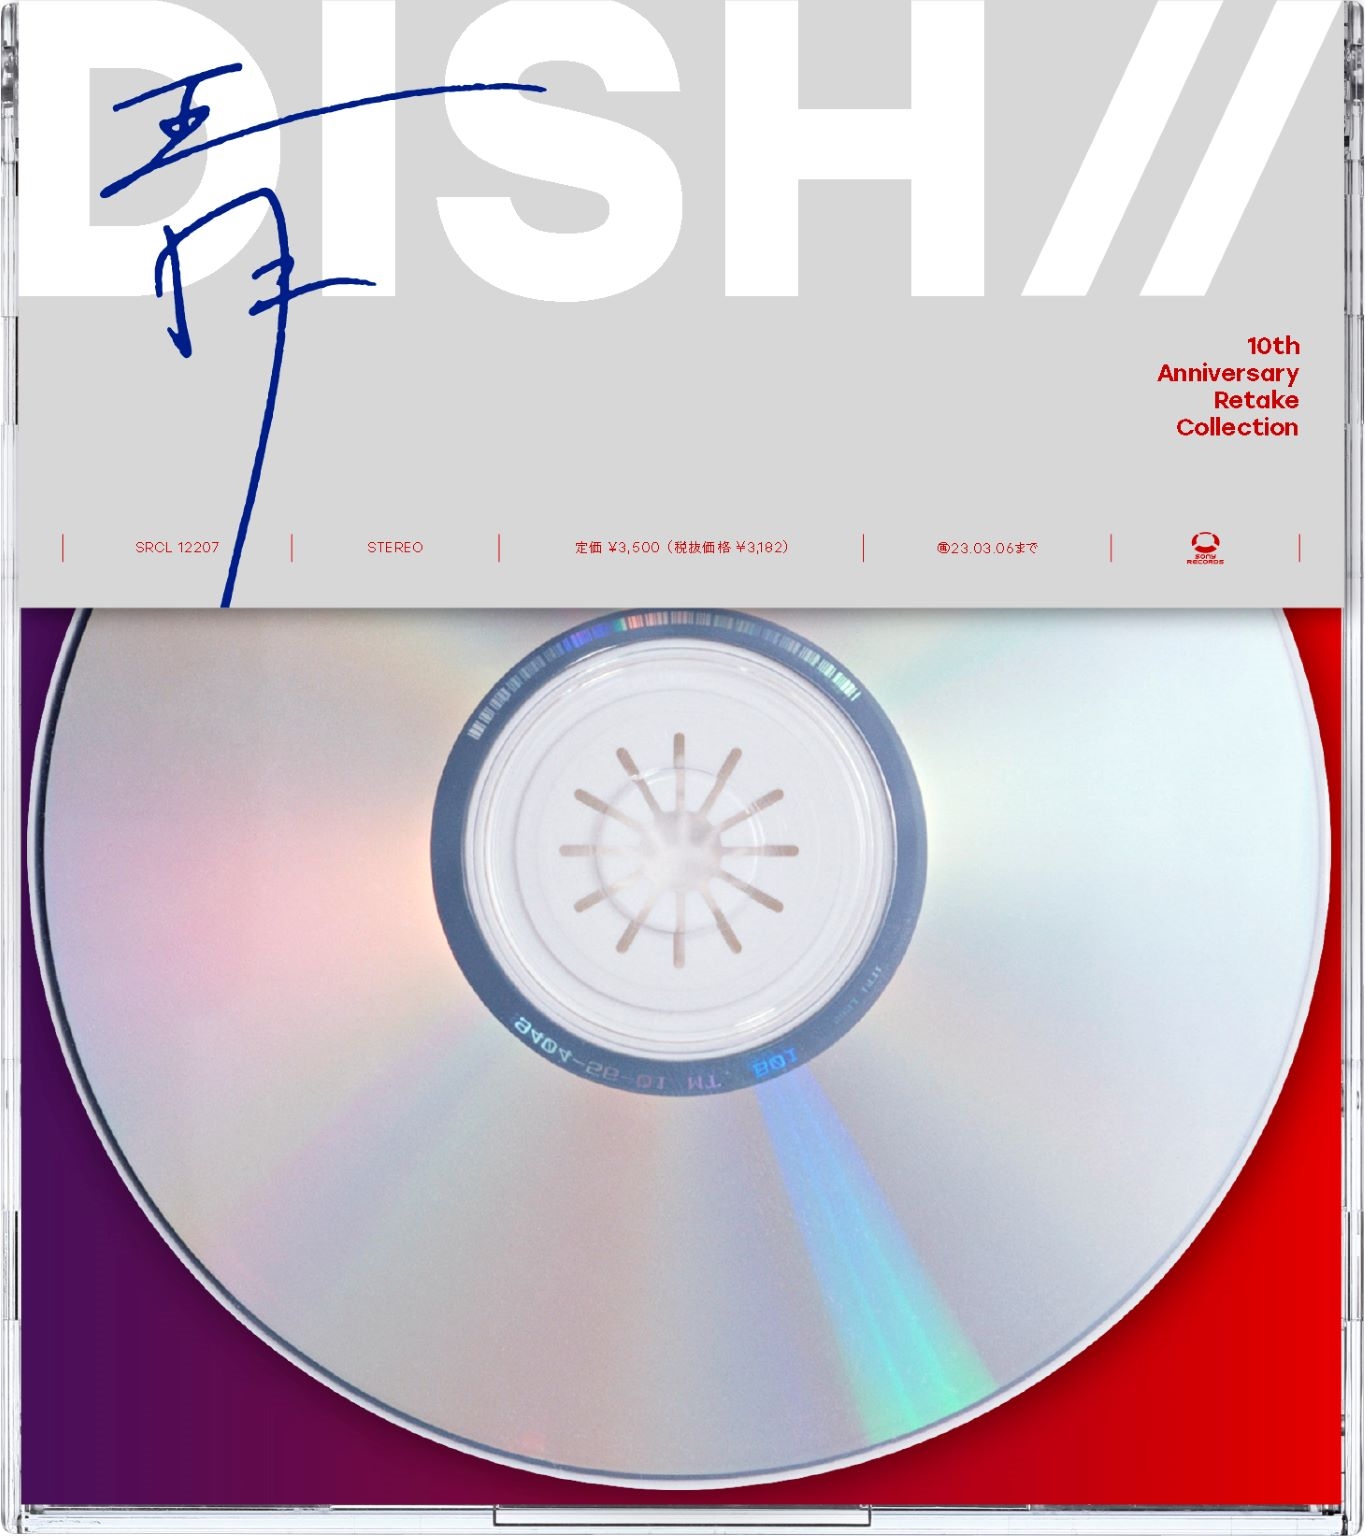 DISH//、10th Anniversary Retake Collection 『青』、  9月7日(水)発売決定！｜Fanpla｜ファンクラブメディア